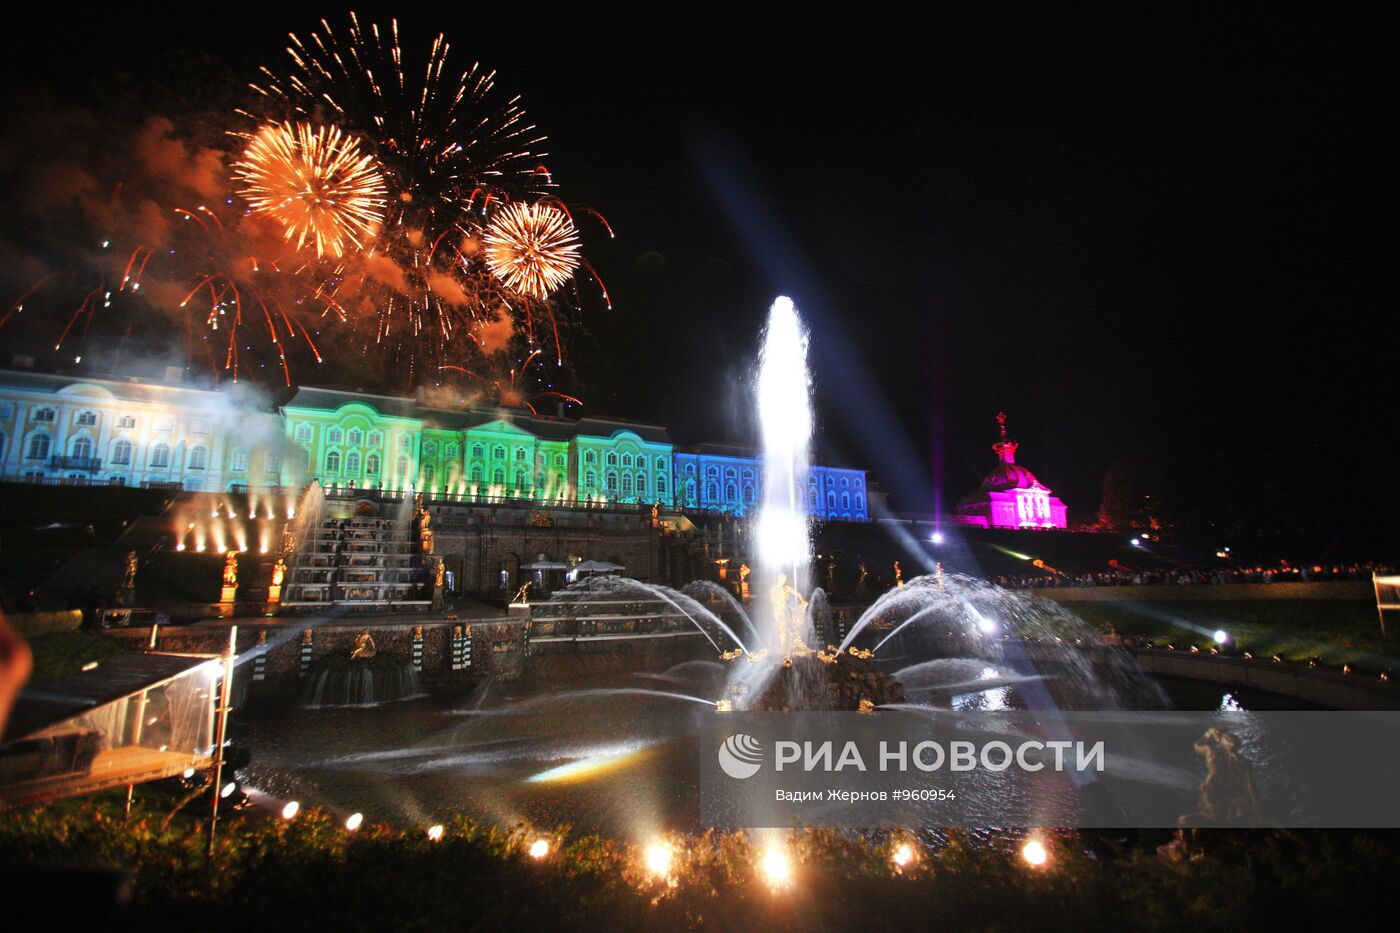 Торжественный праздник закрытия фонтанов в Петергофе